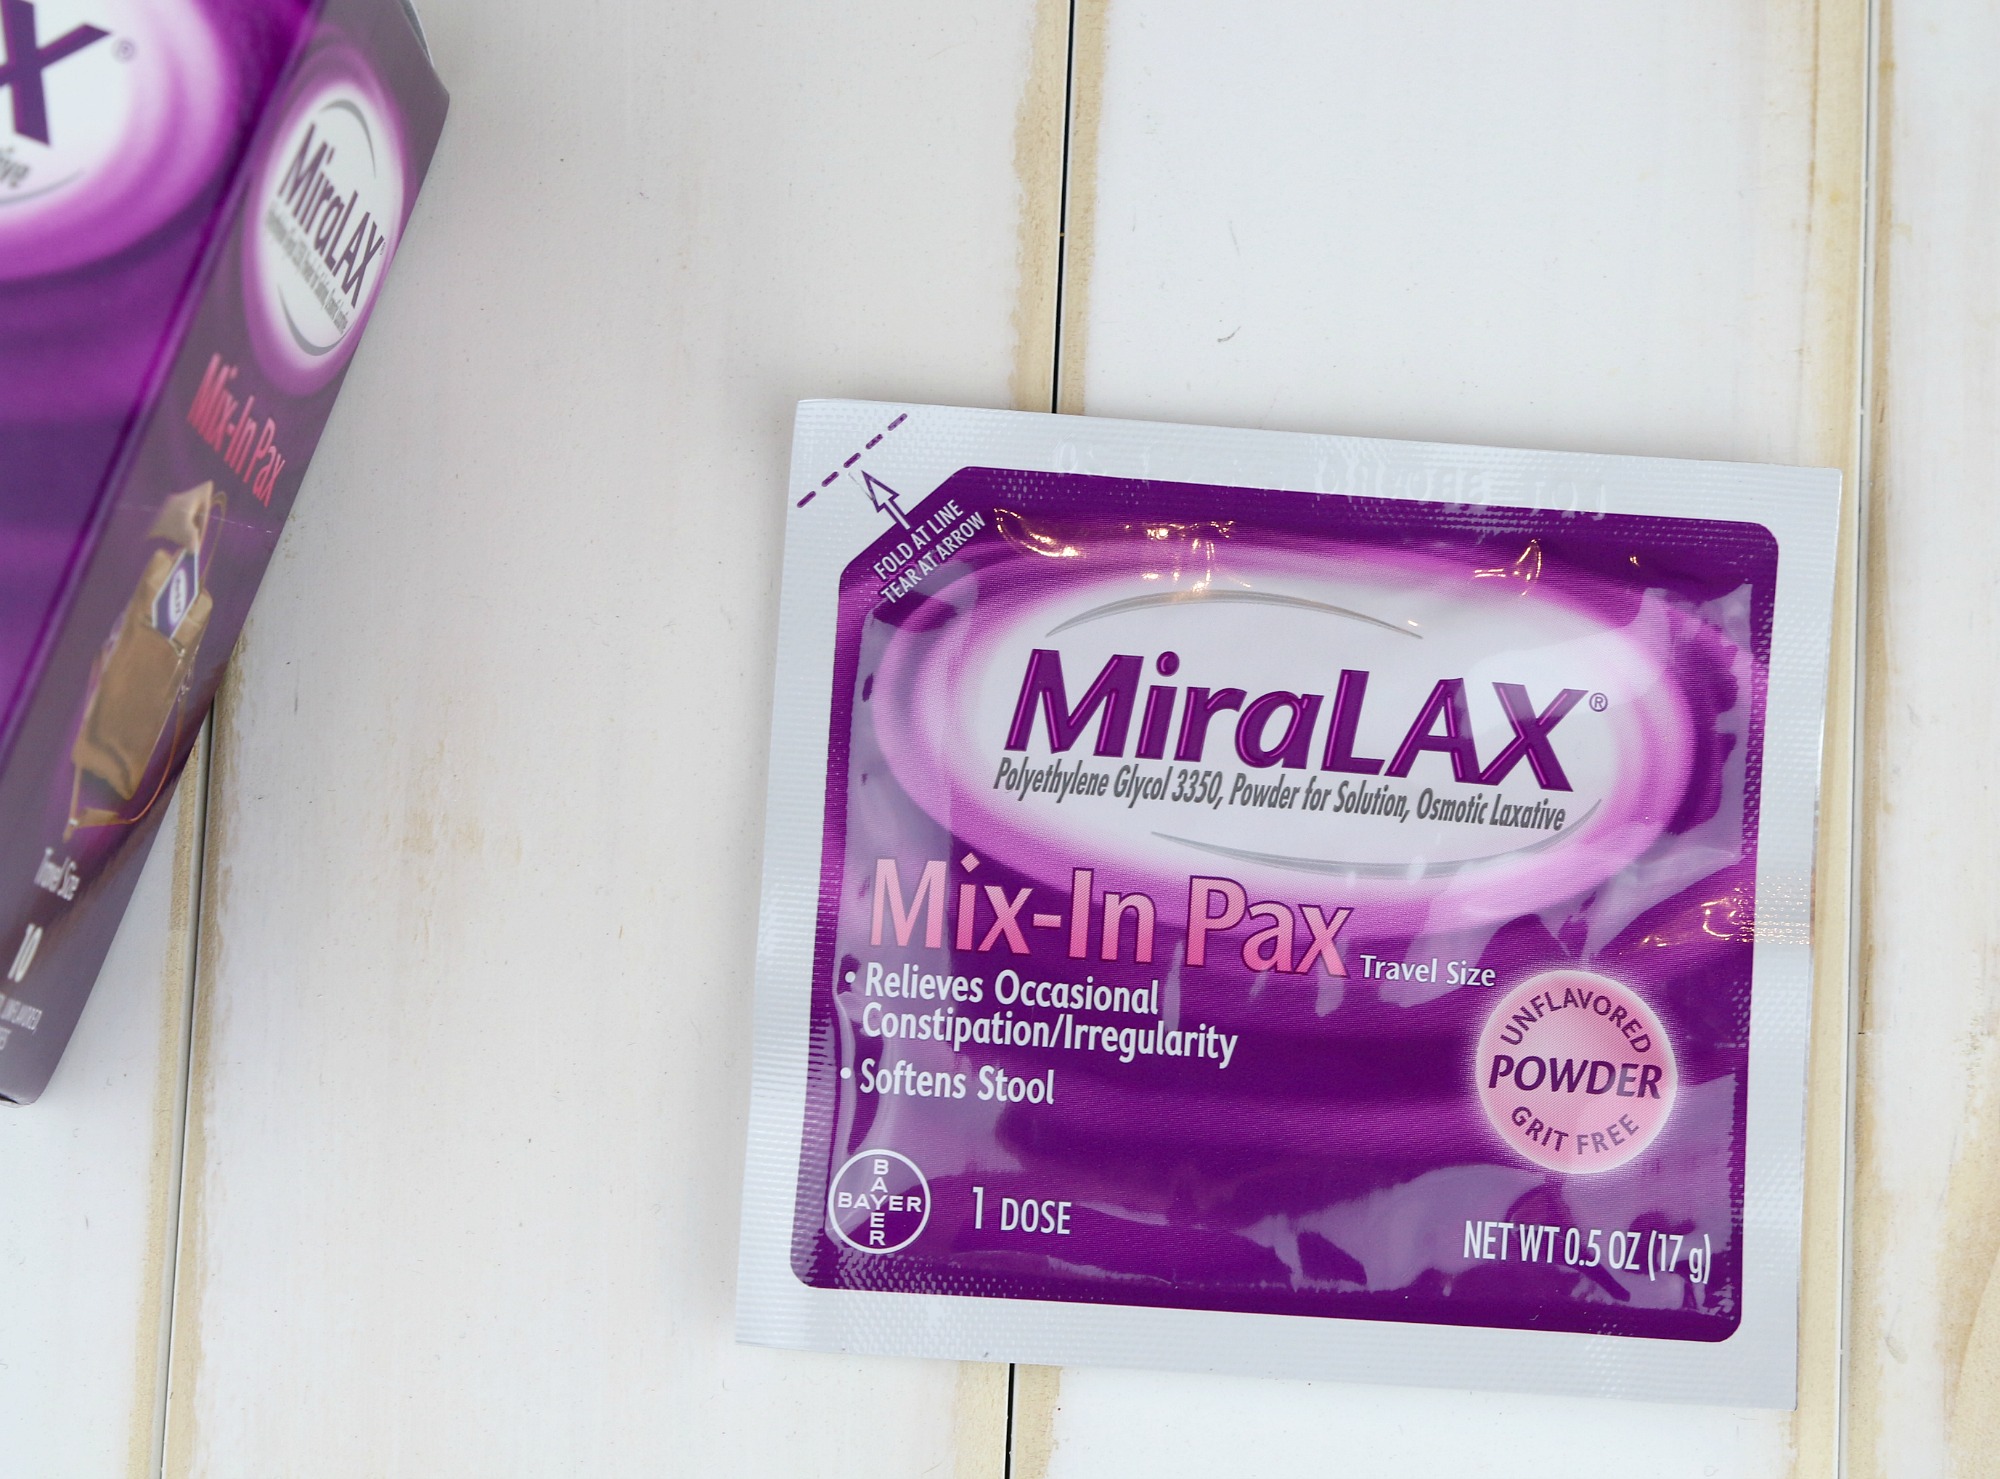 MiraLAX Mix-In Pax